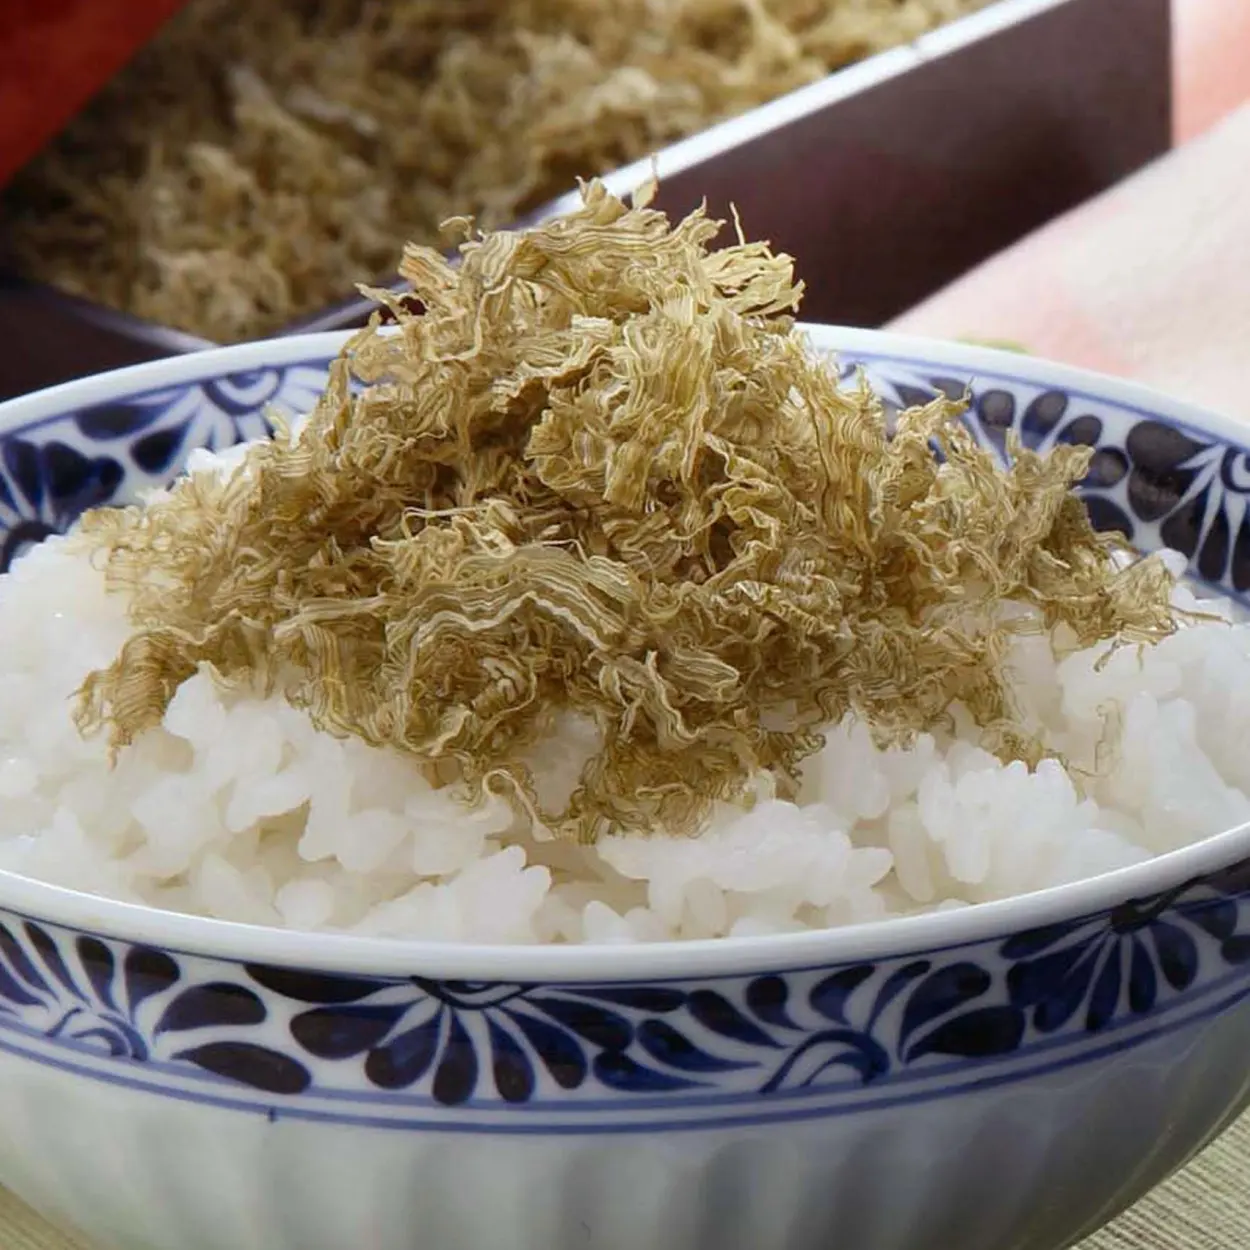 رقائق عشب البحر يرش تورورو كومبو فيورايك جيد مع الأرز والسوشي